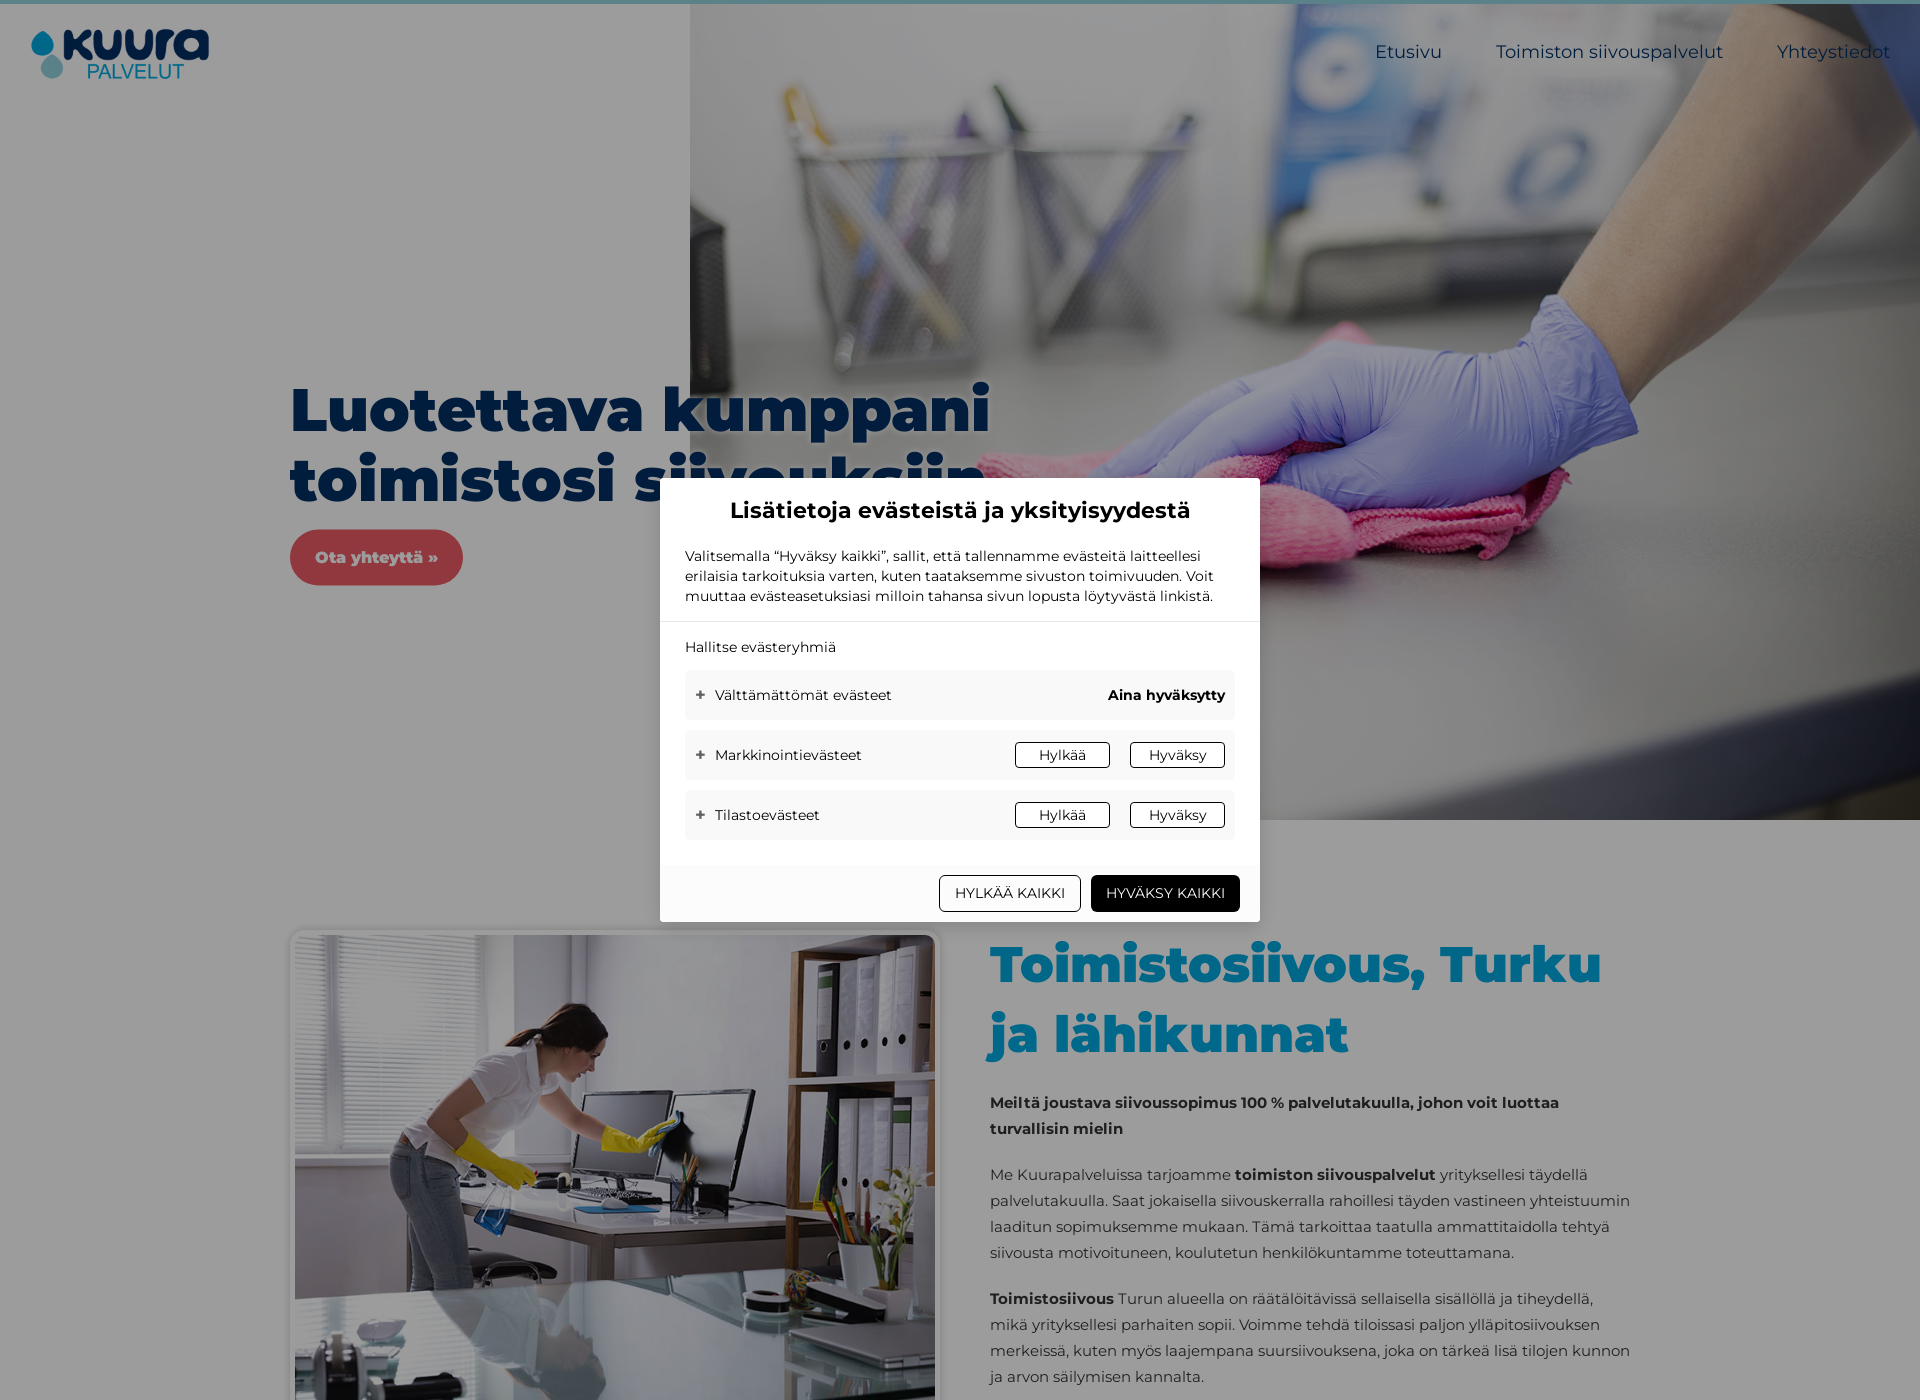 Näyttökuva toimistosiivousturku.fi